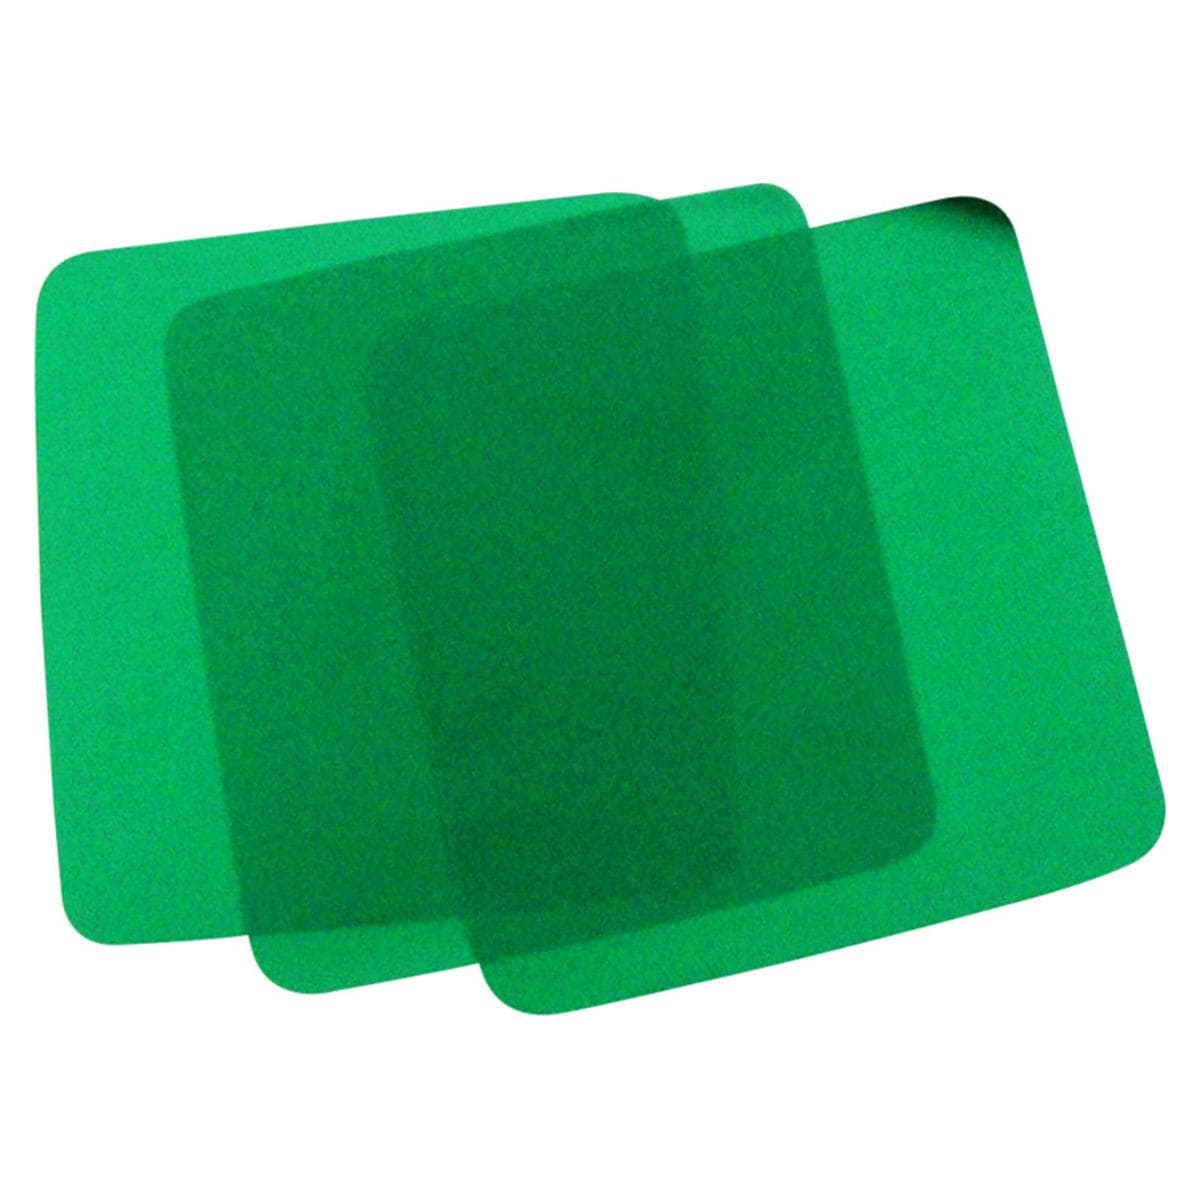 HS-Kofferdam Format 15 x 15 cm - Grün, dünn, Packung 36 Blatt